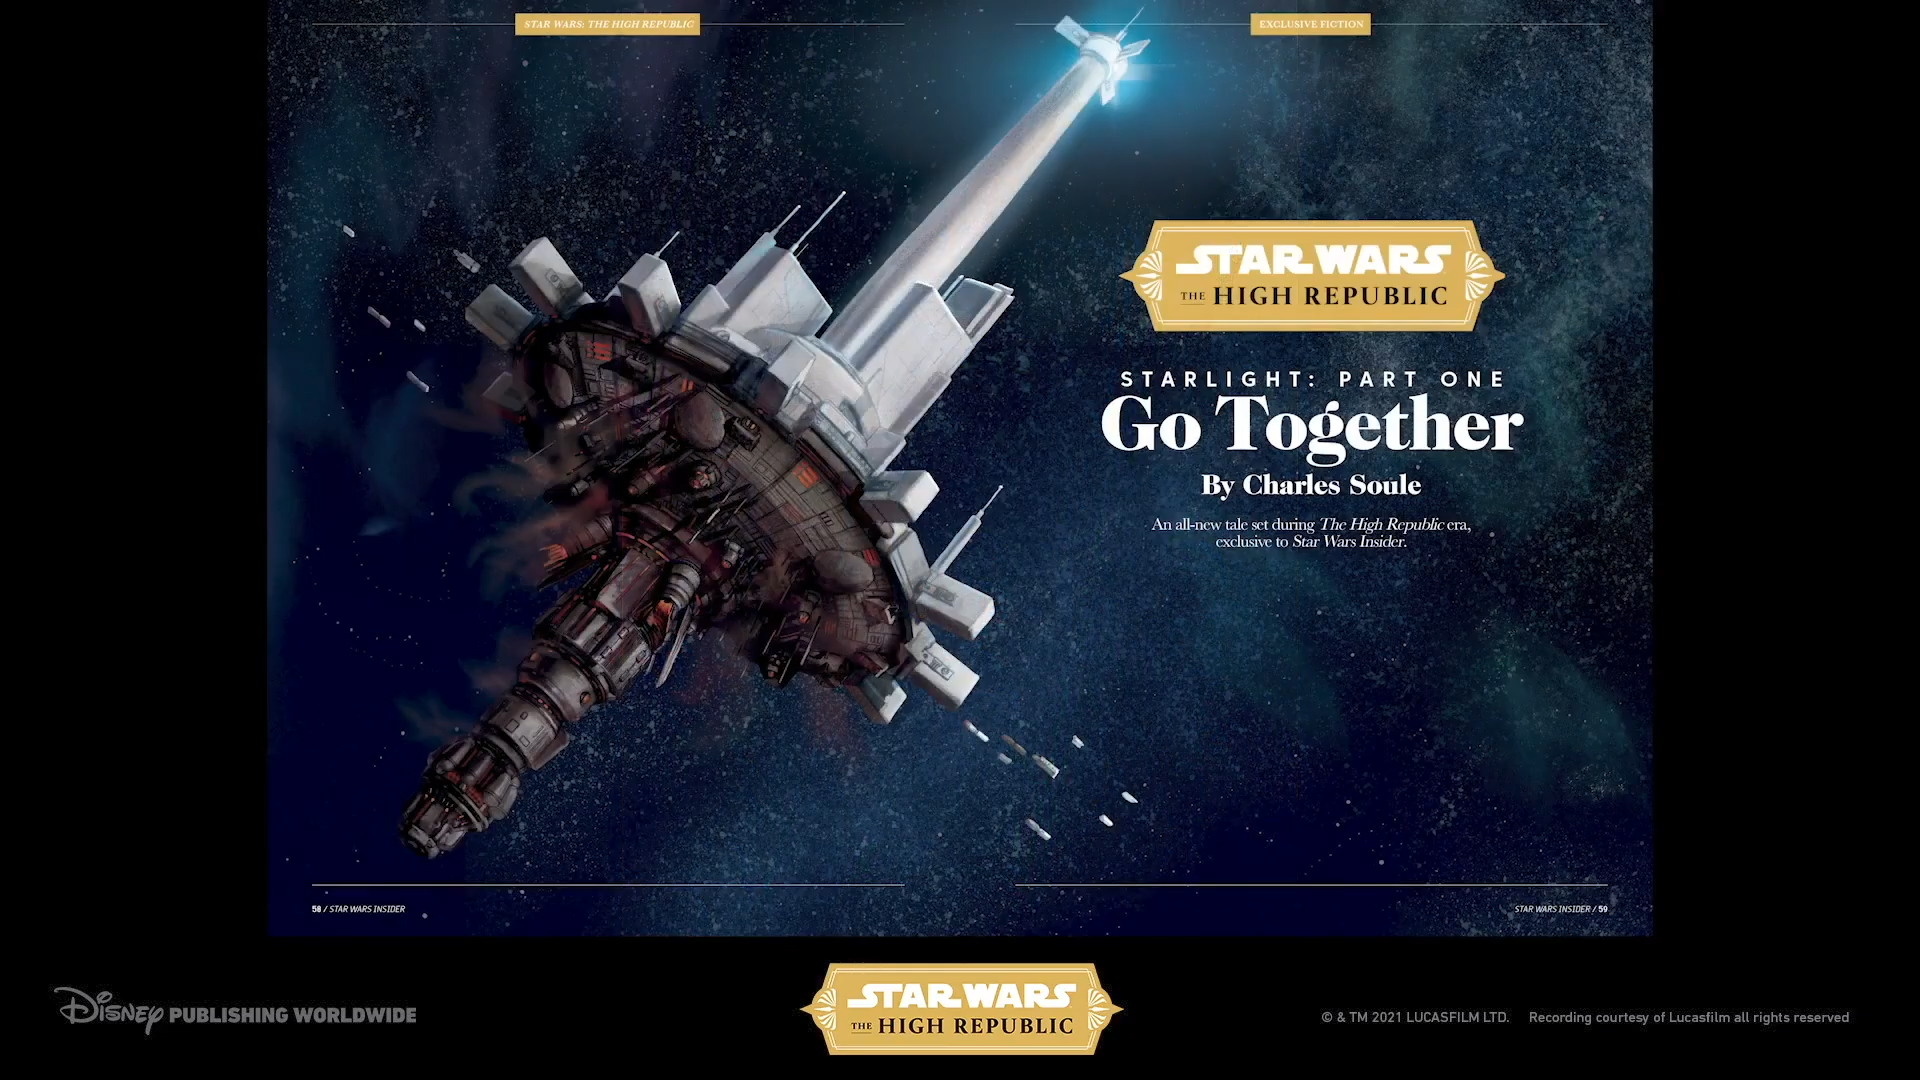 Go Together, written by Cavan Scott for Star Wars Insider